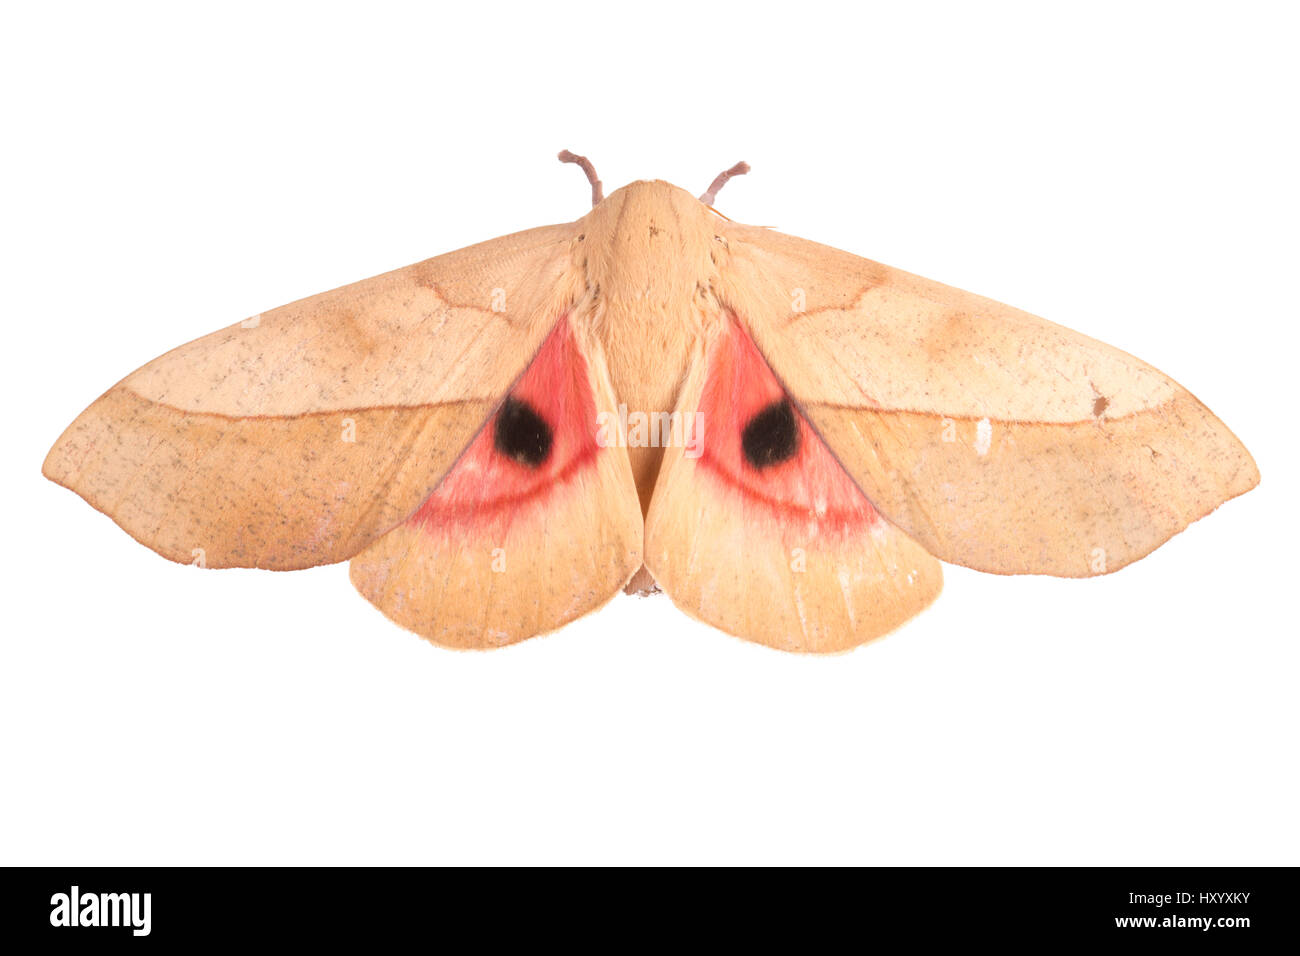 Folge 2 von 2 Saturniid Motte (Saturniidae) Flügel öffnen mit Augenflecken, um Feinde abzuschrecken. Cordillera De Talamanca Range, Costa Rica. Stockfoto